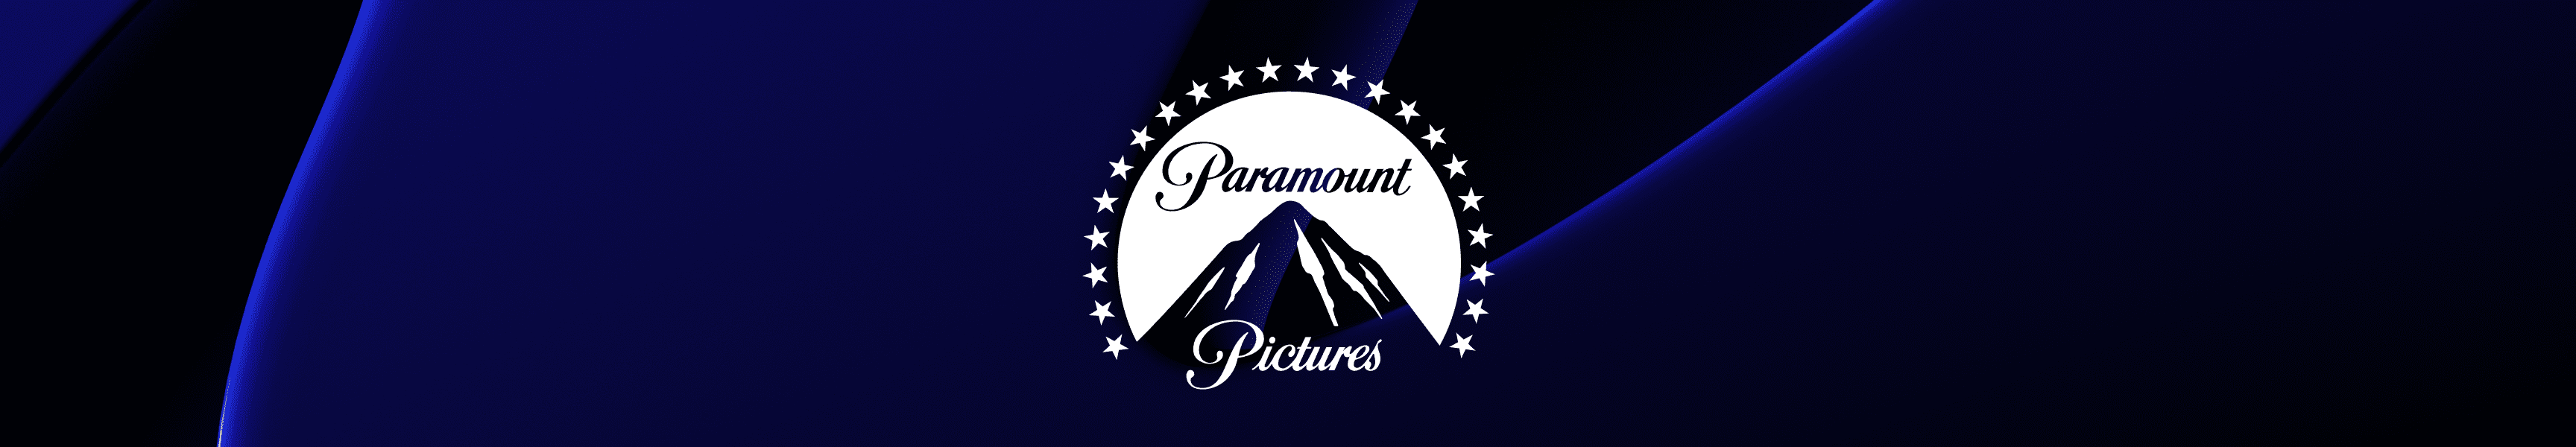 Paramount Pictures Pantalones de deporte